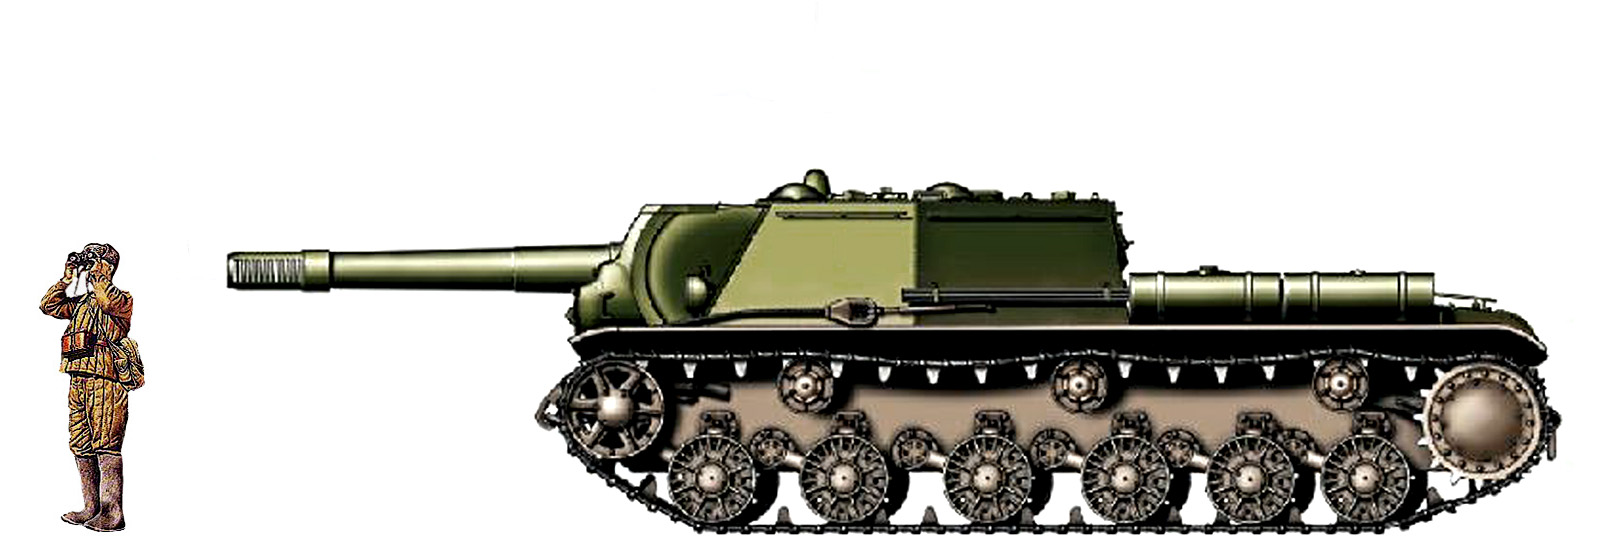 Бок ис. Танк ИСУ 152 сбоку. Су 152 2д. Су 152 сбоку. Су-152 вид сбоку.